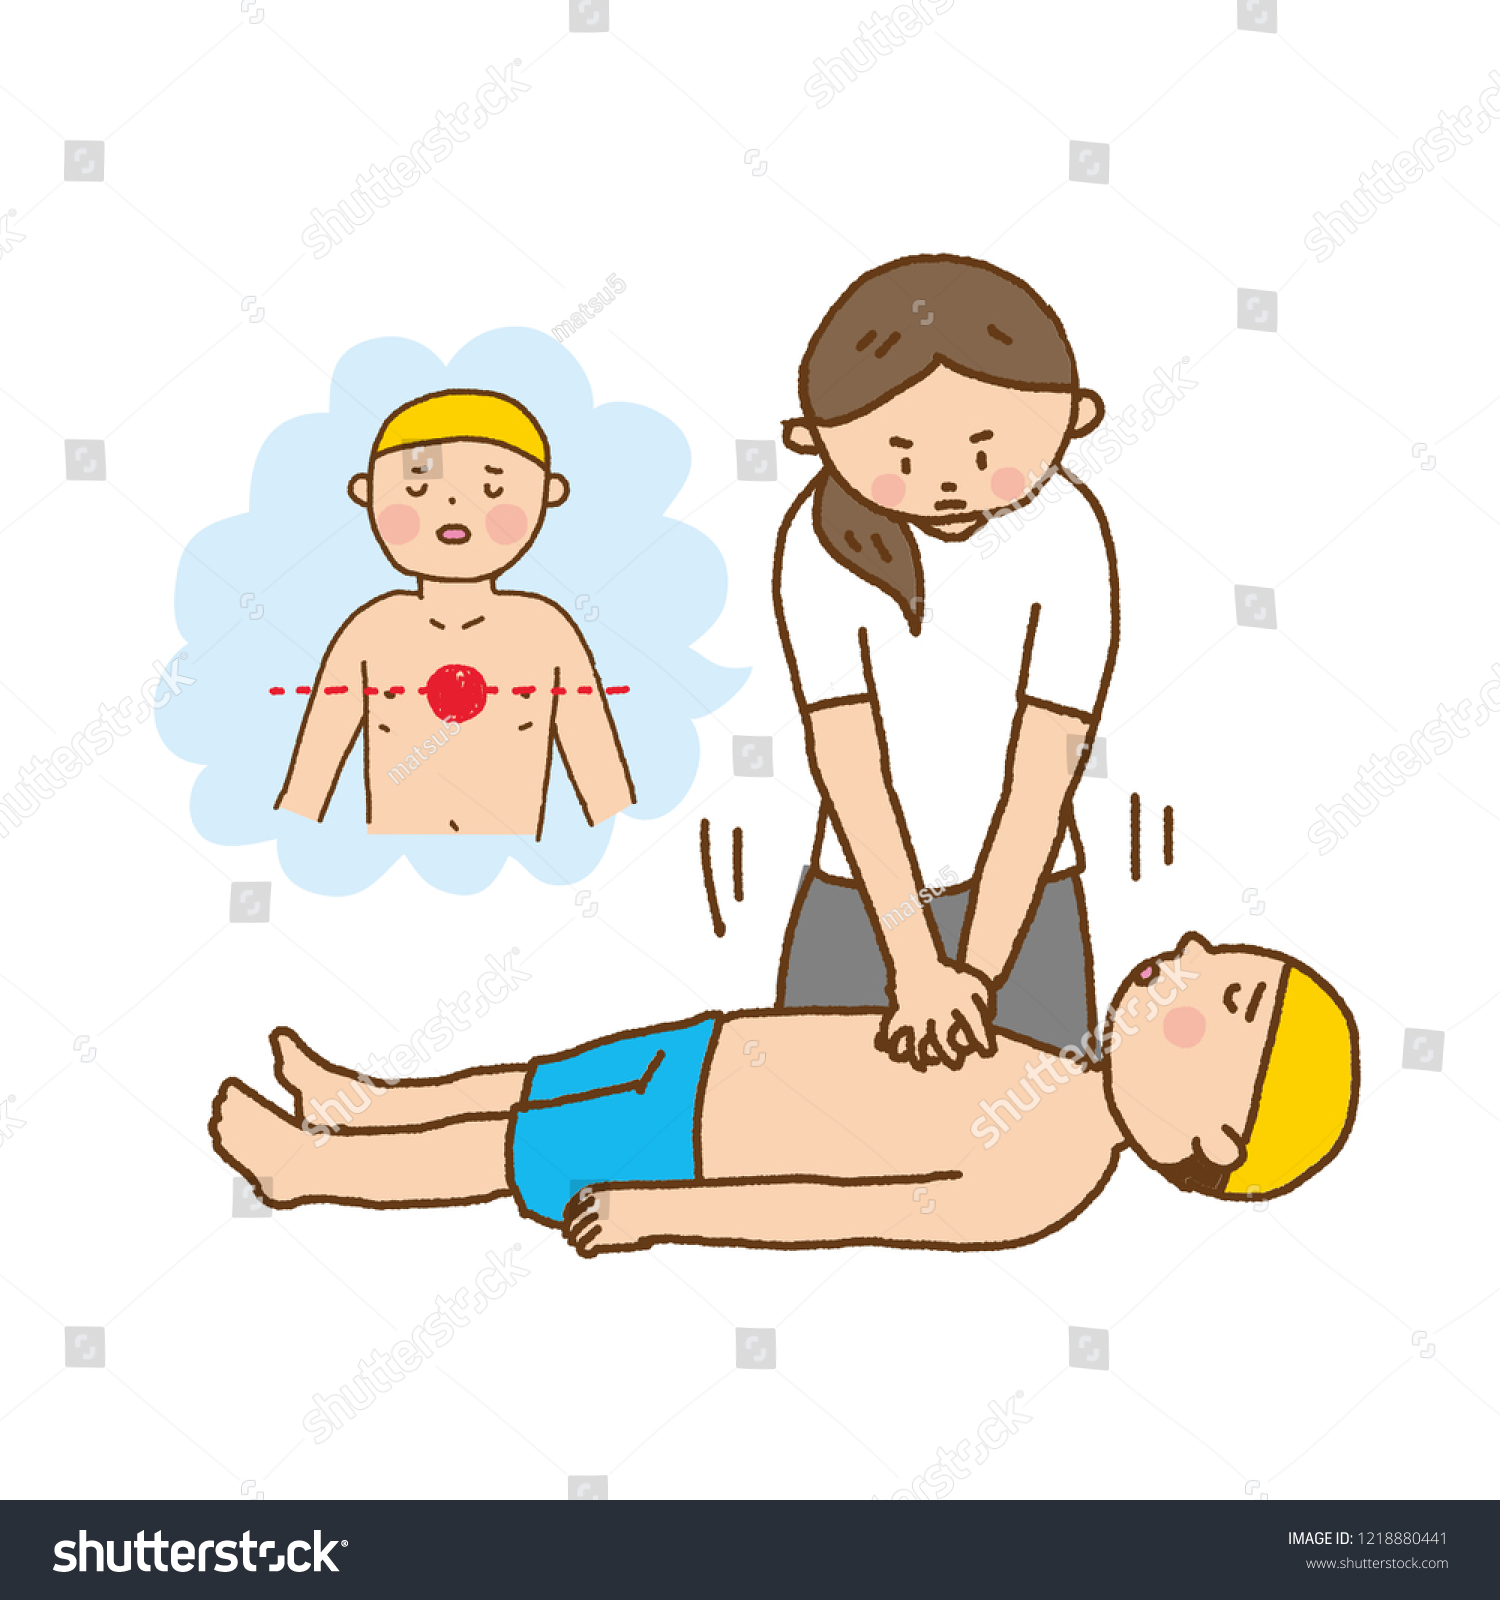 Heart Heart Massage